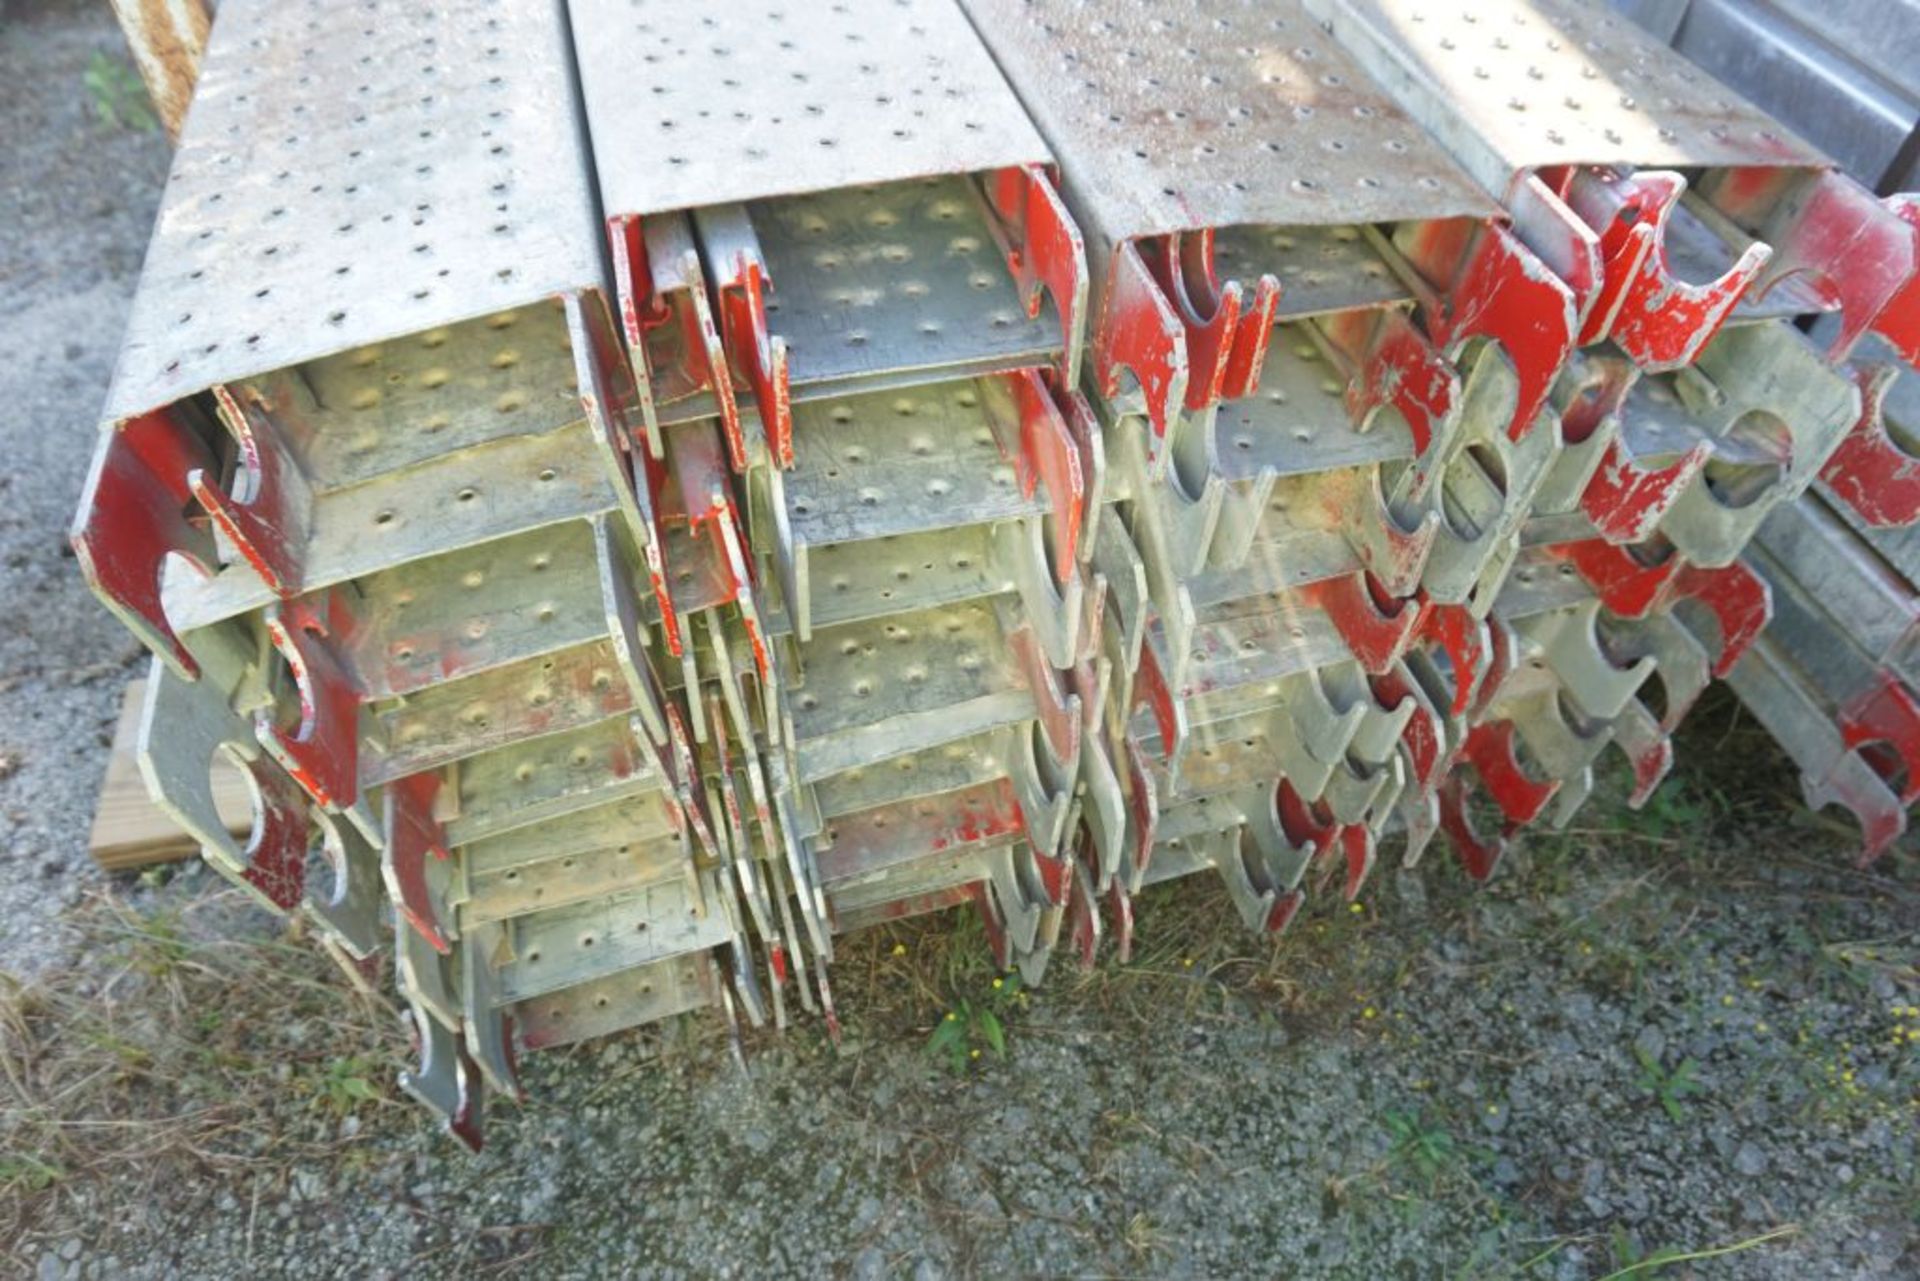 Lot of (256) 7' Steel Plank - 9" Wide - Bay Length 84" (2.13M); Type: WBSSP7 - (4) Racks Per Lot - - Image 6 of 12